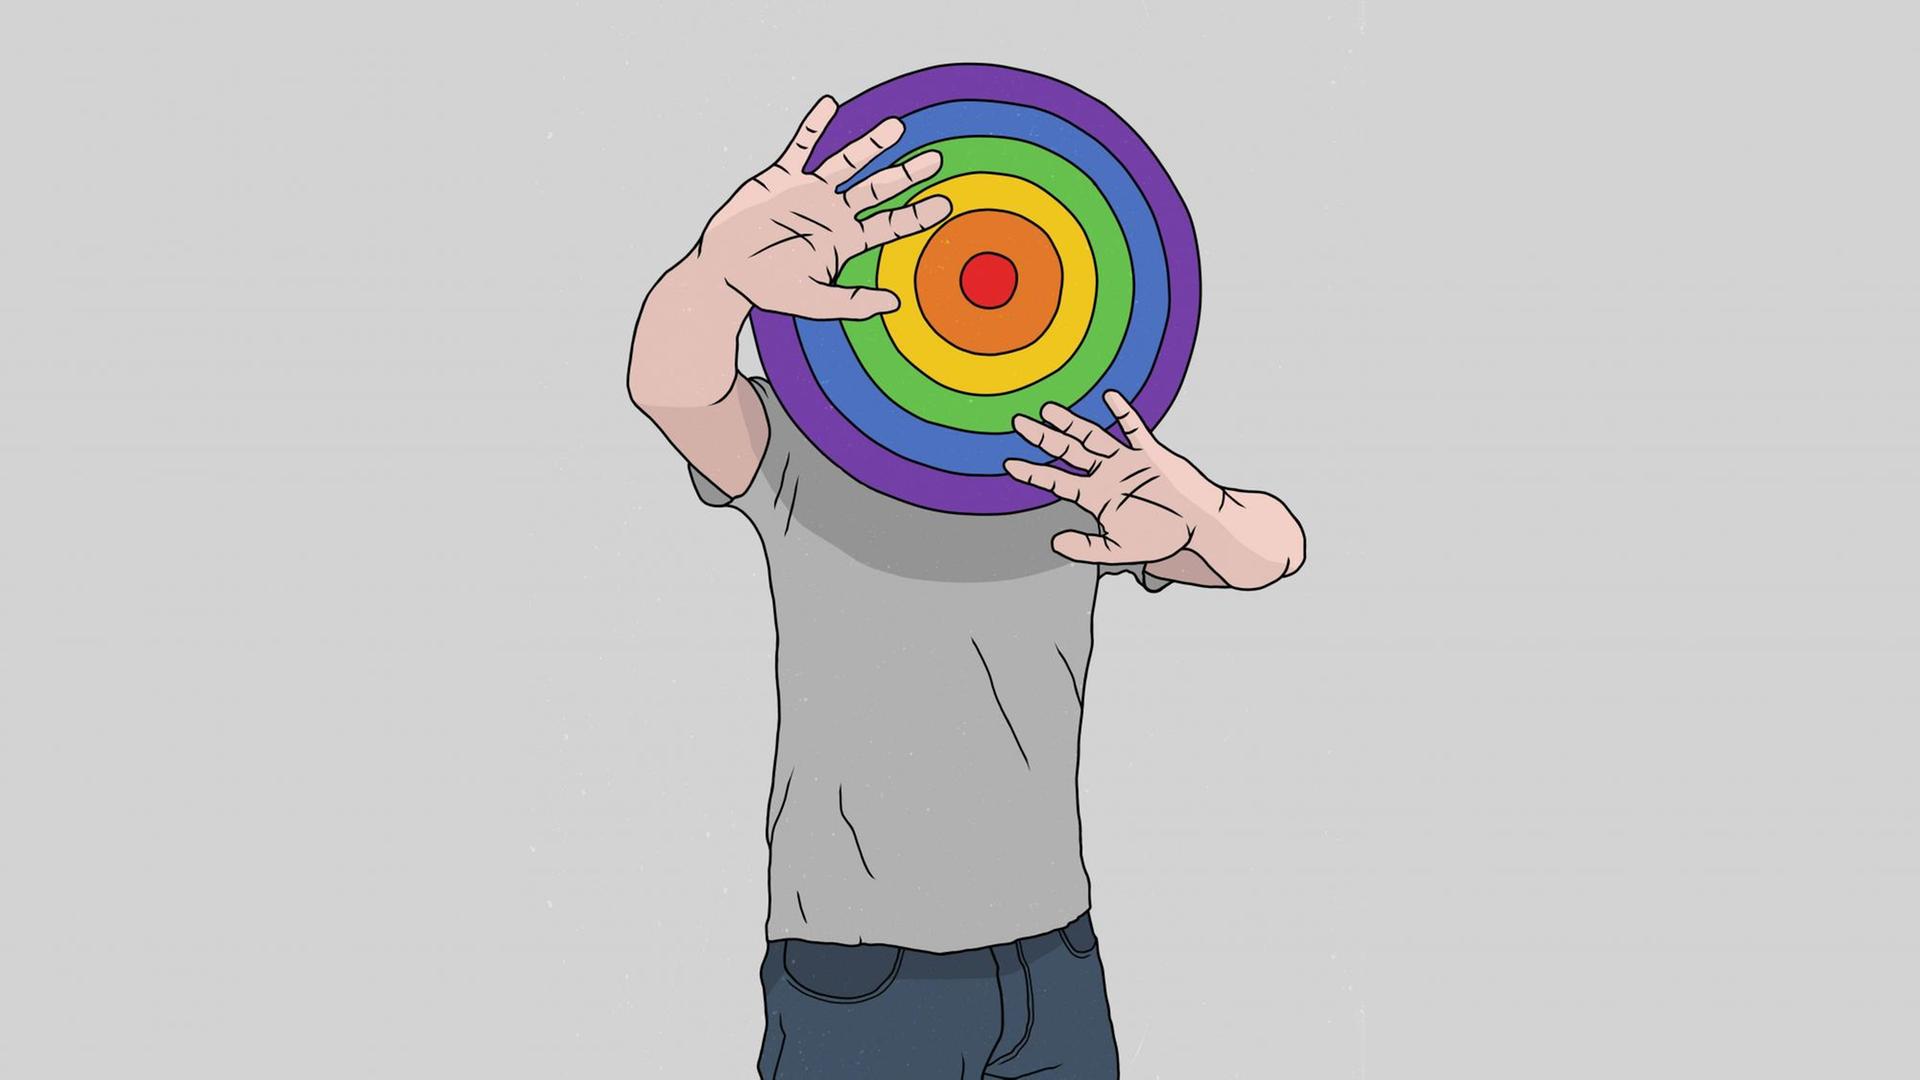 Illustration einer Person in grauem T-Shirt, deren Kopf eine regenbogenfarbene Dartscheibe ist. Die Hände sind abwehrend erhoben.